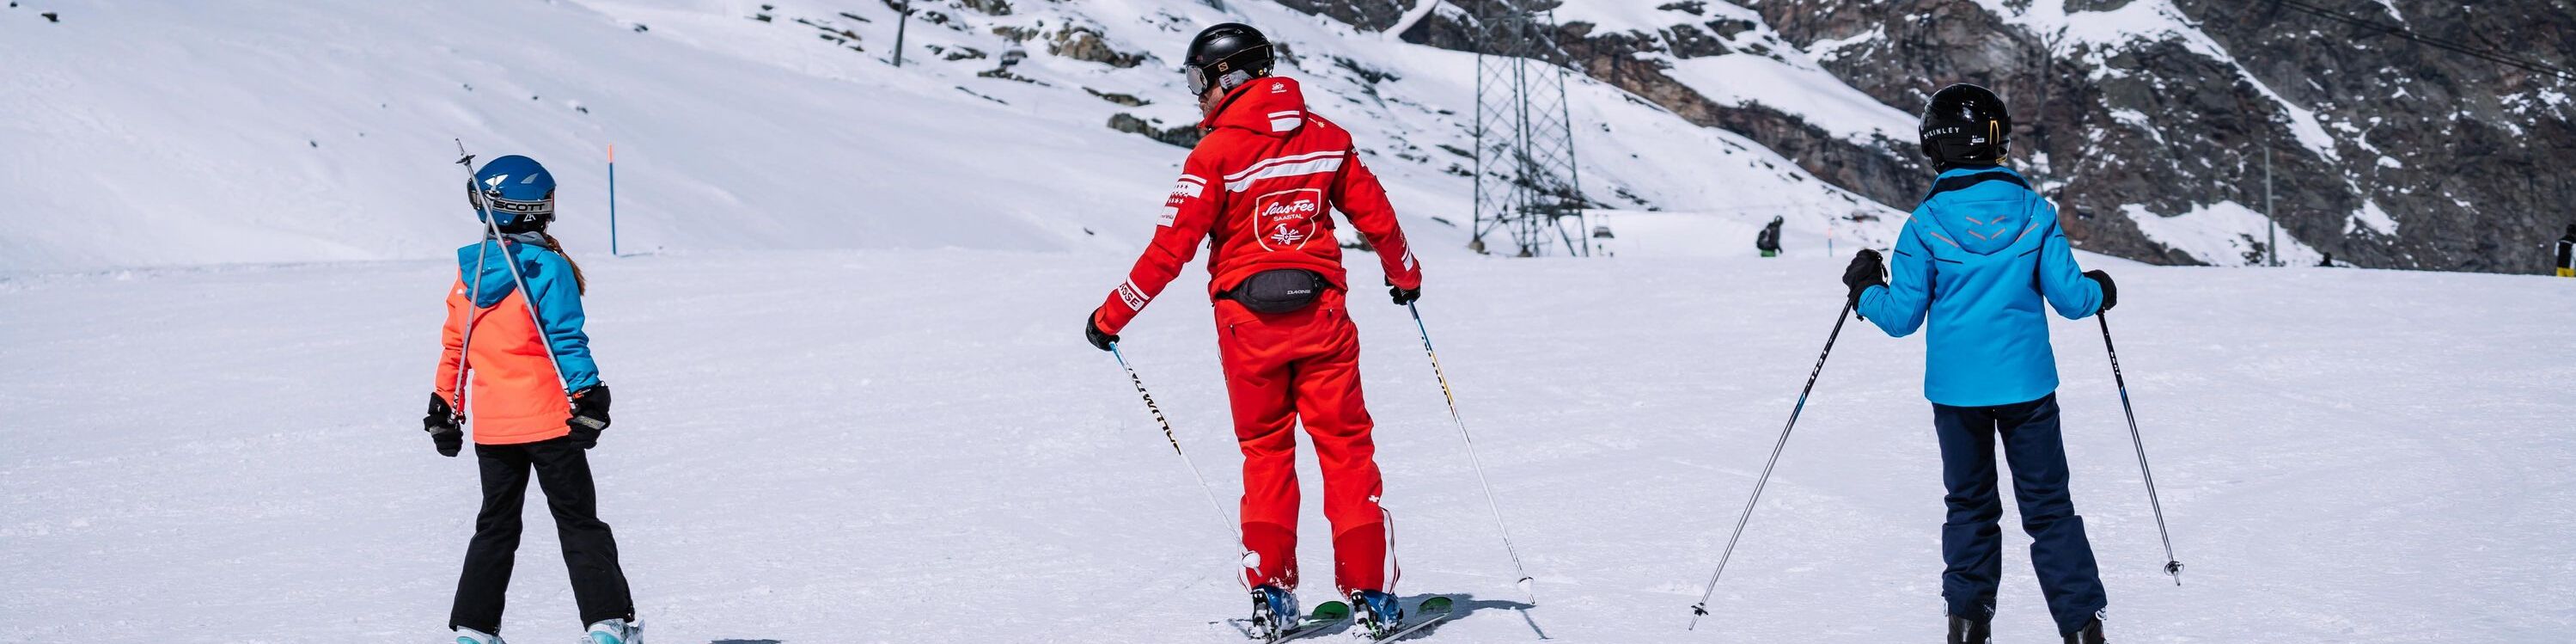 Enquiry form | Swiss Ski School Saas-Fee